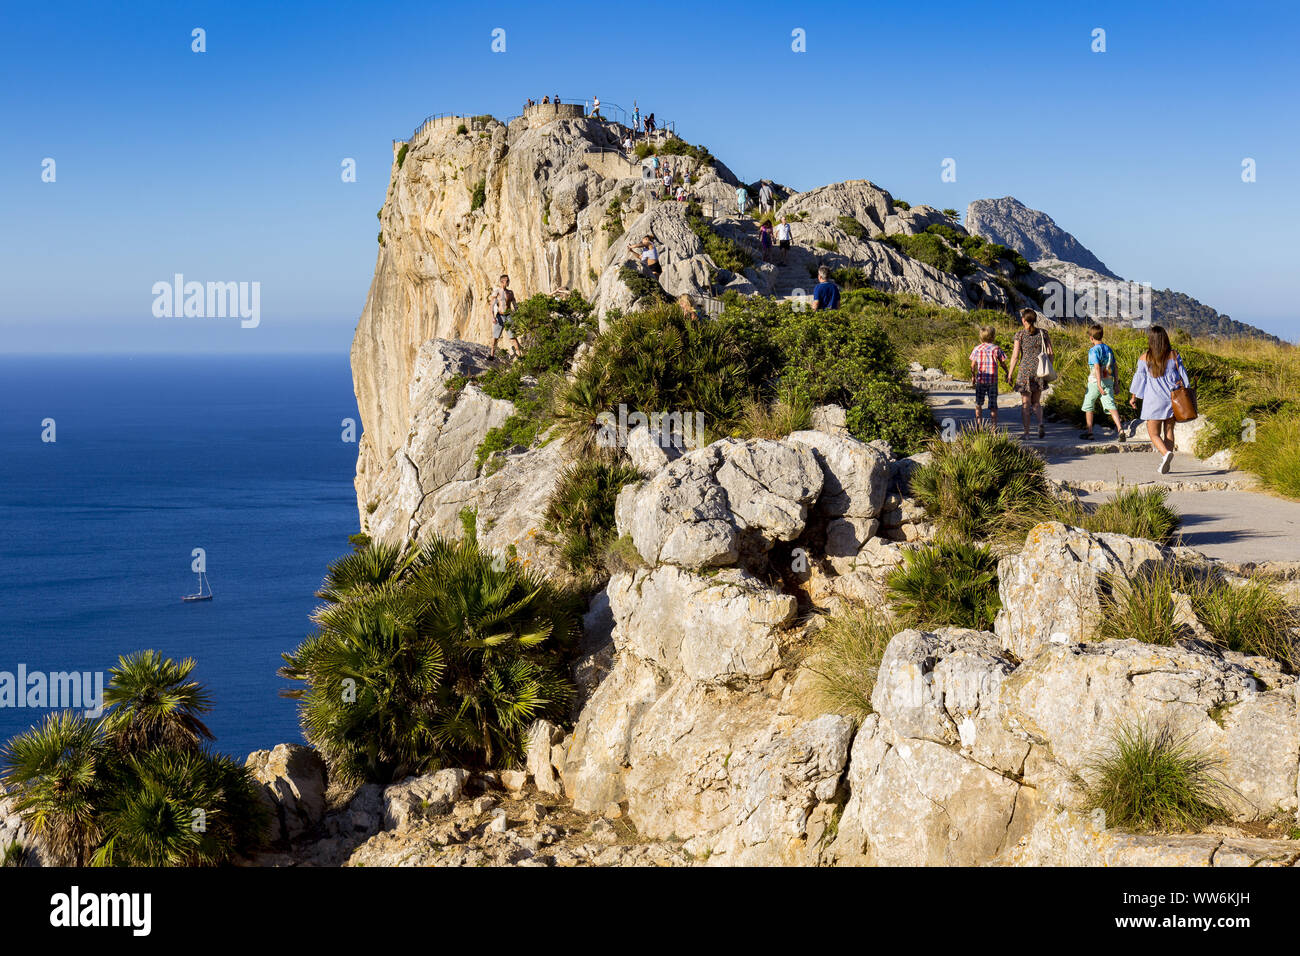 Mirador de Mal Pas, la península de Formentor, al noreste de la isla de Mallorca, Mediterráneo, Islas Baleares, España, sur de Europa Foto de stock